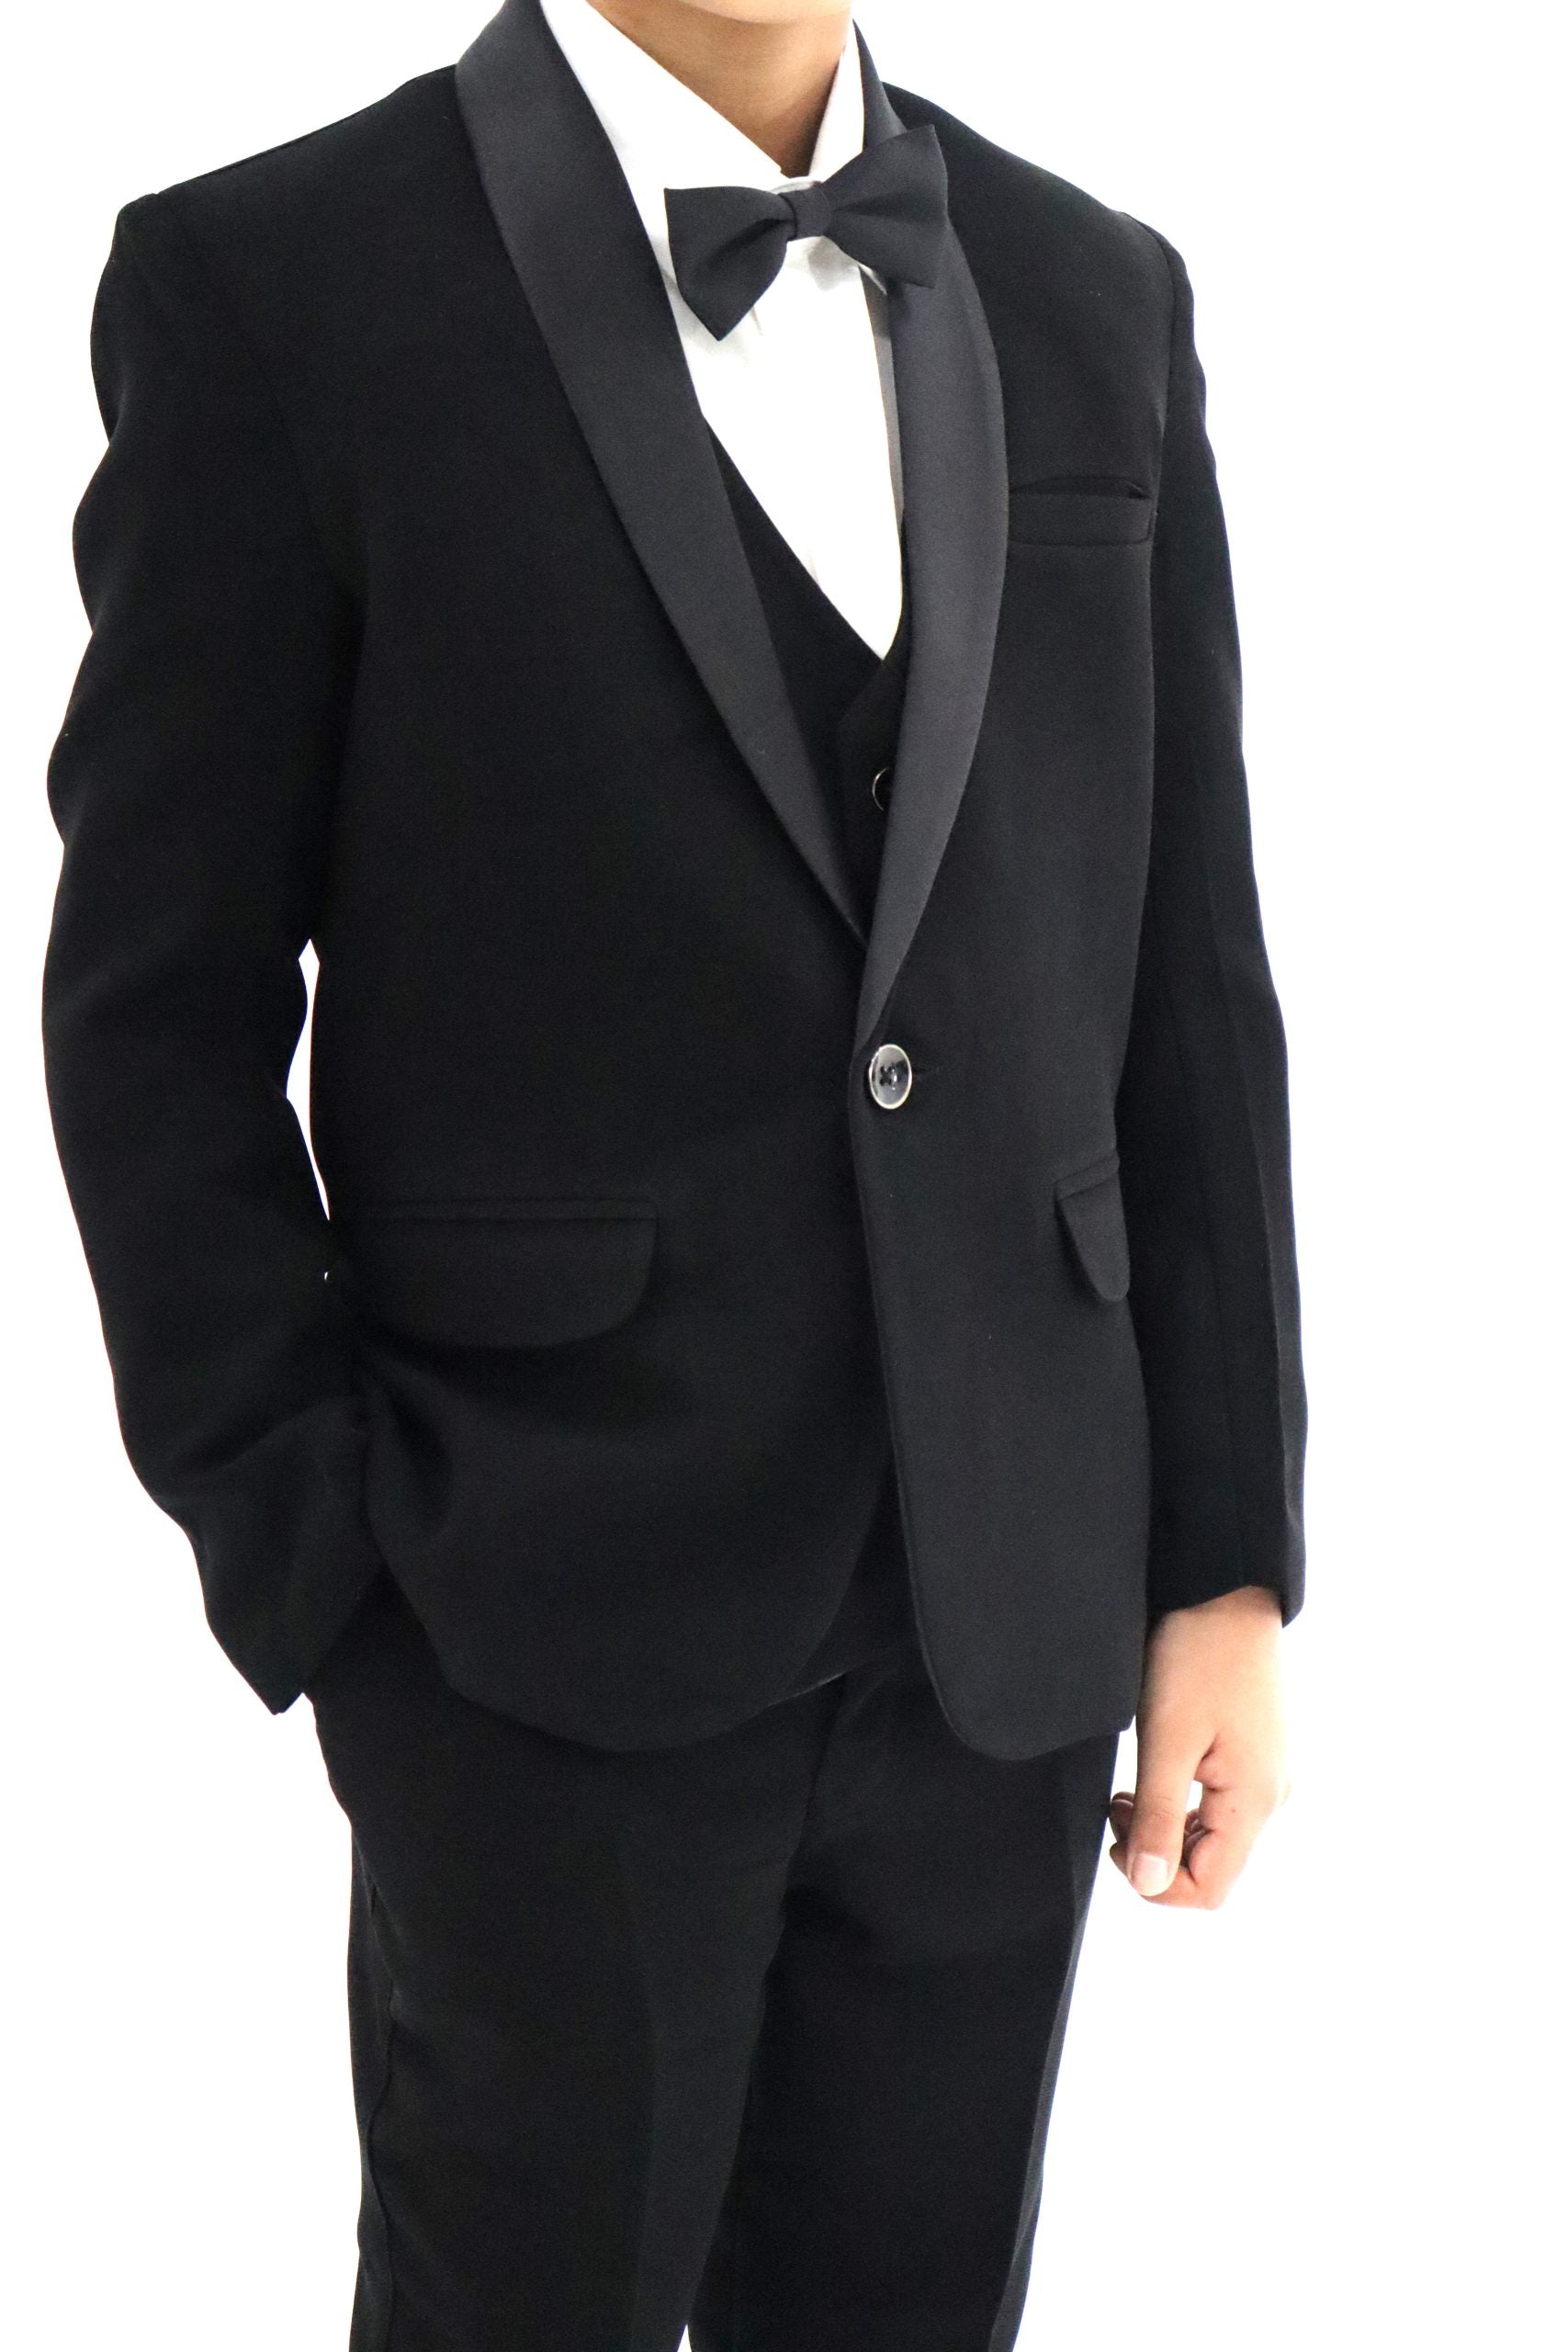 Boys Slim Fit Black Tuxedo Suit 5Pc Set